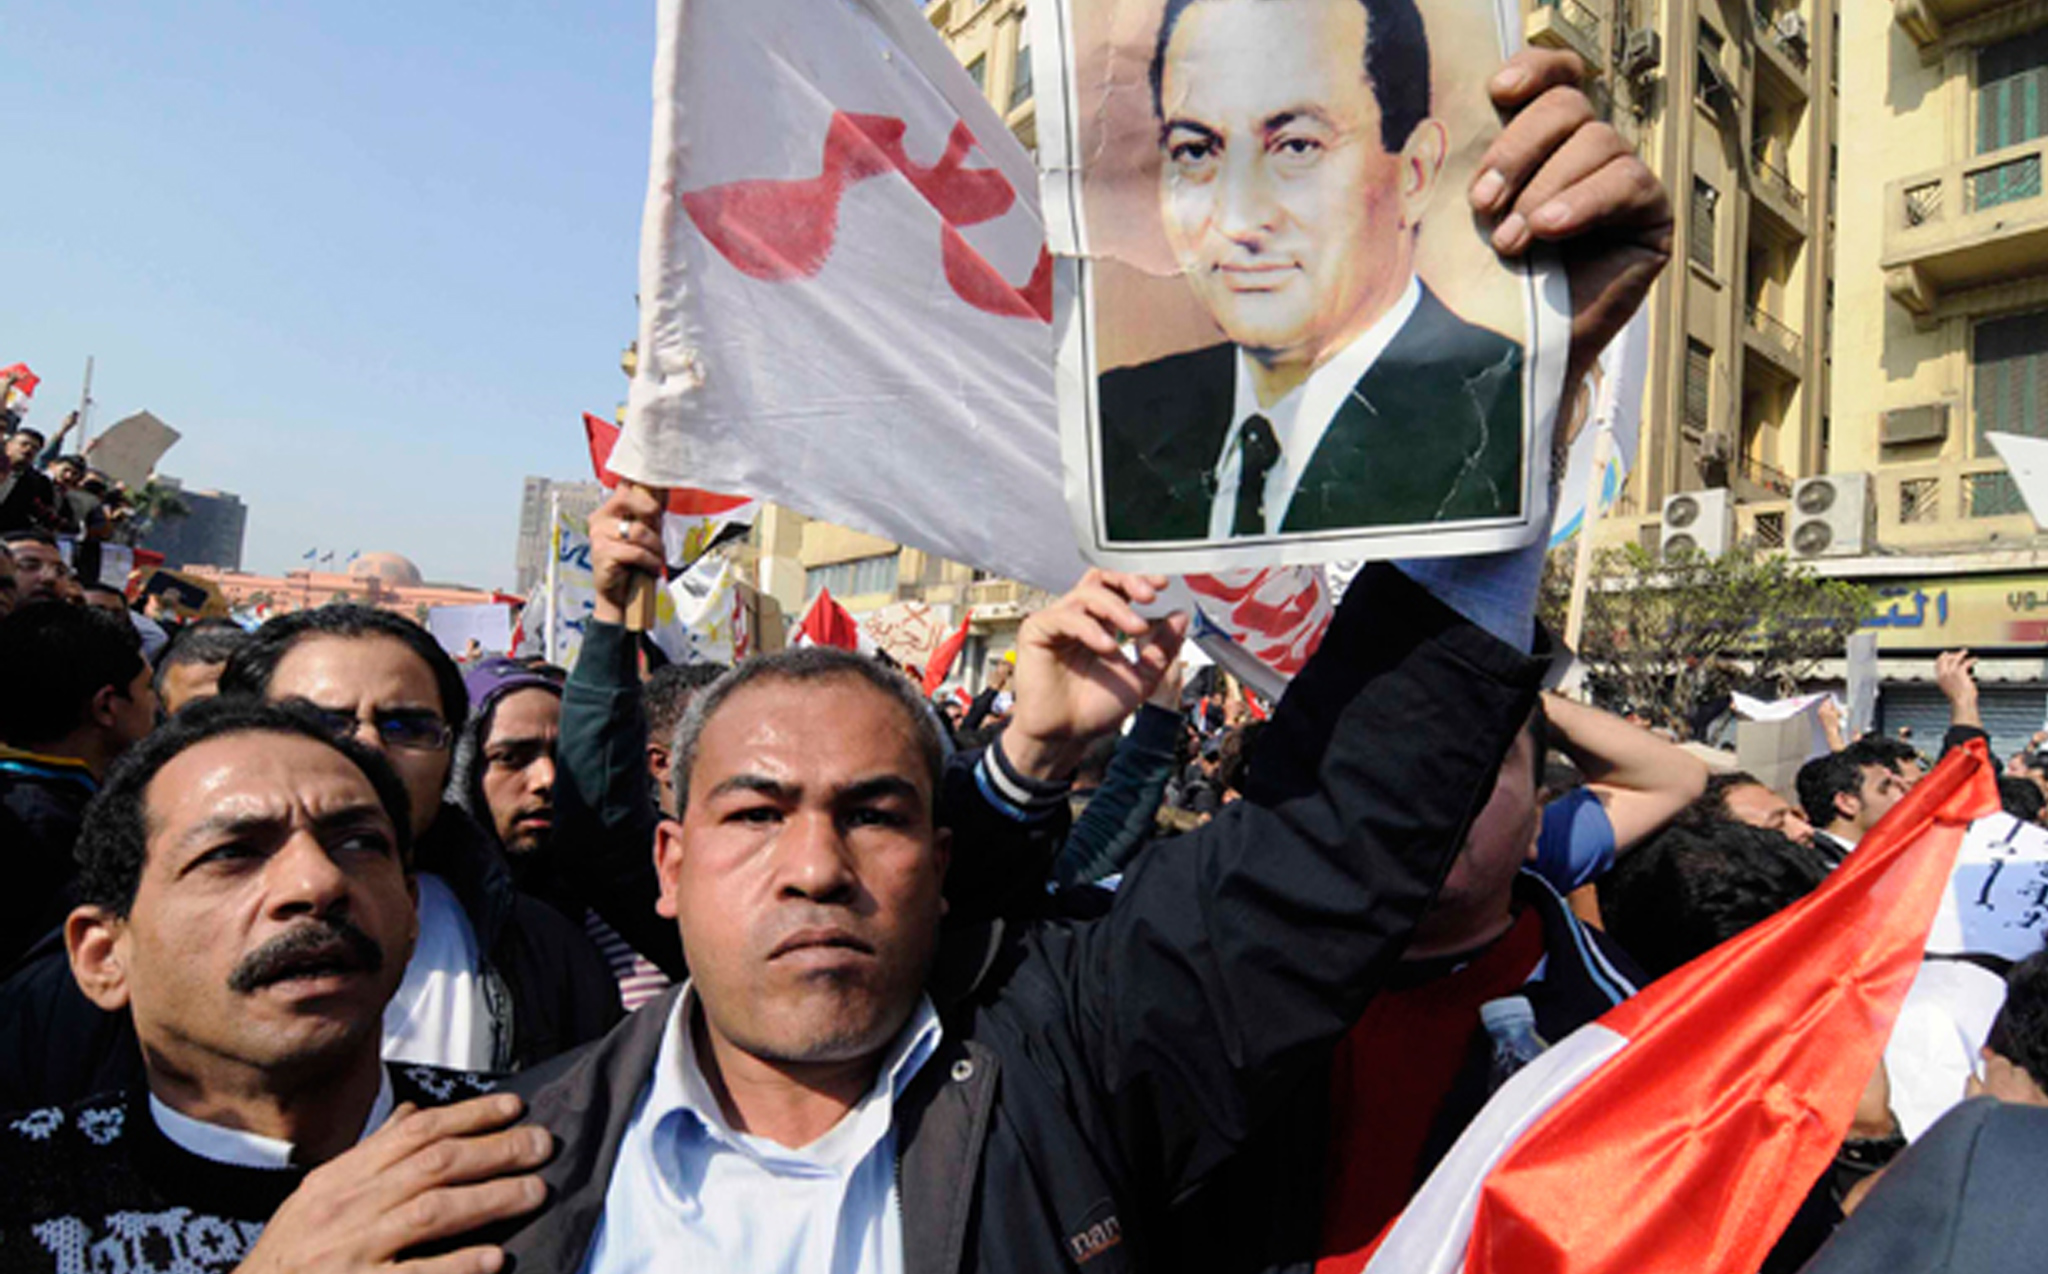  Le lendemain, le 2 février, les partisans du président Moubarak entendent mettre un terme à la mascarade» de Tahrir. <br>
(Crédit photo : Mehdi Chebil)